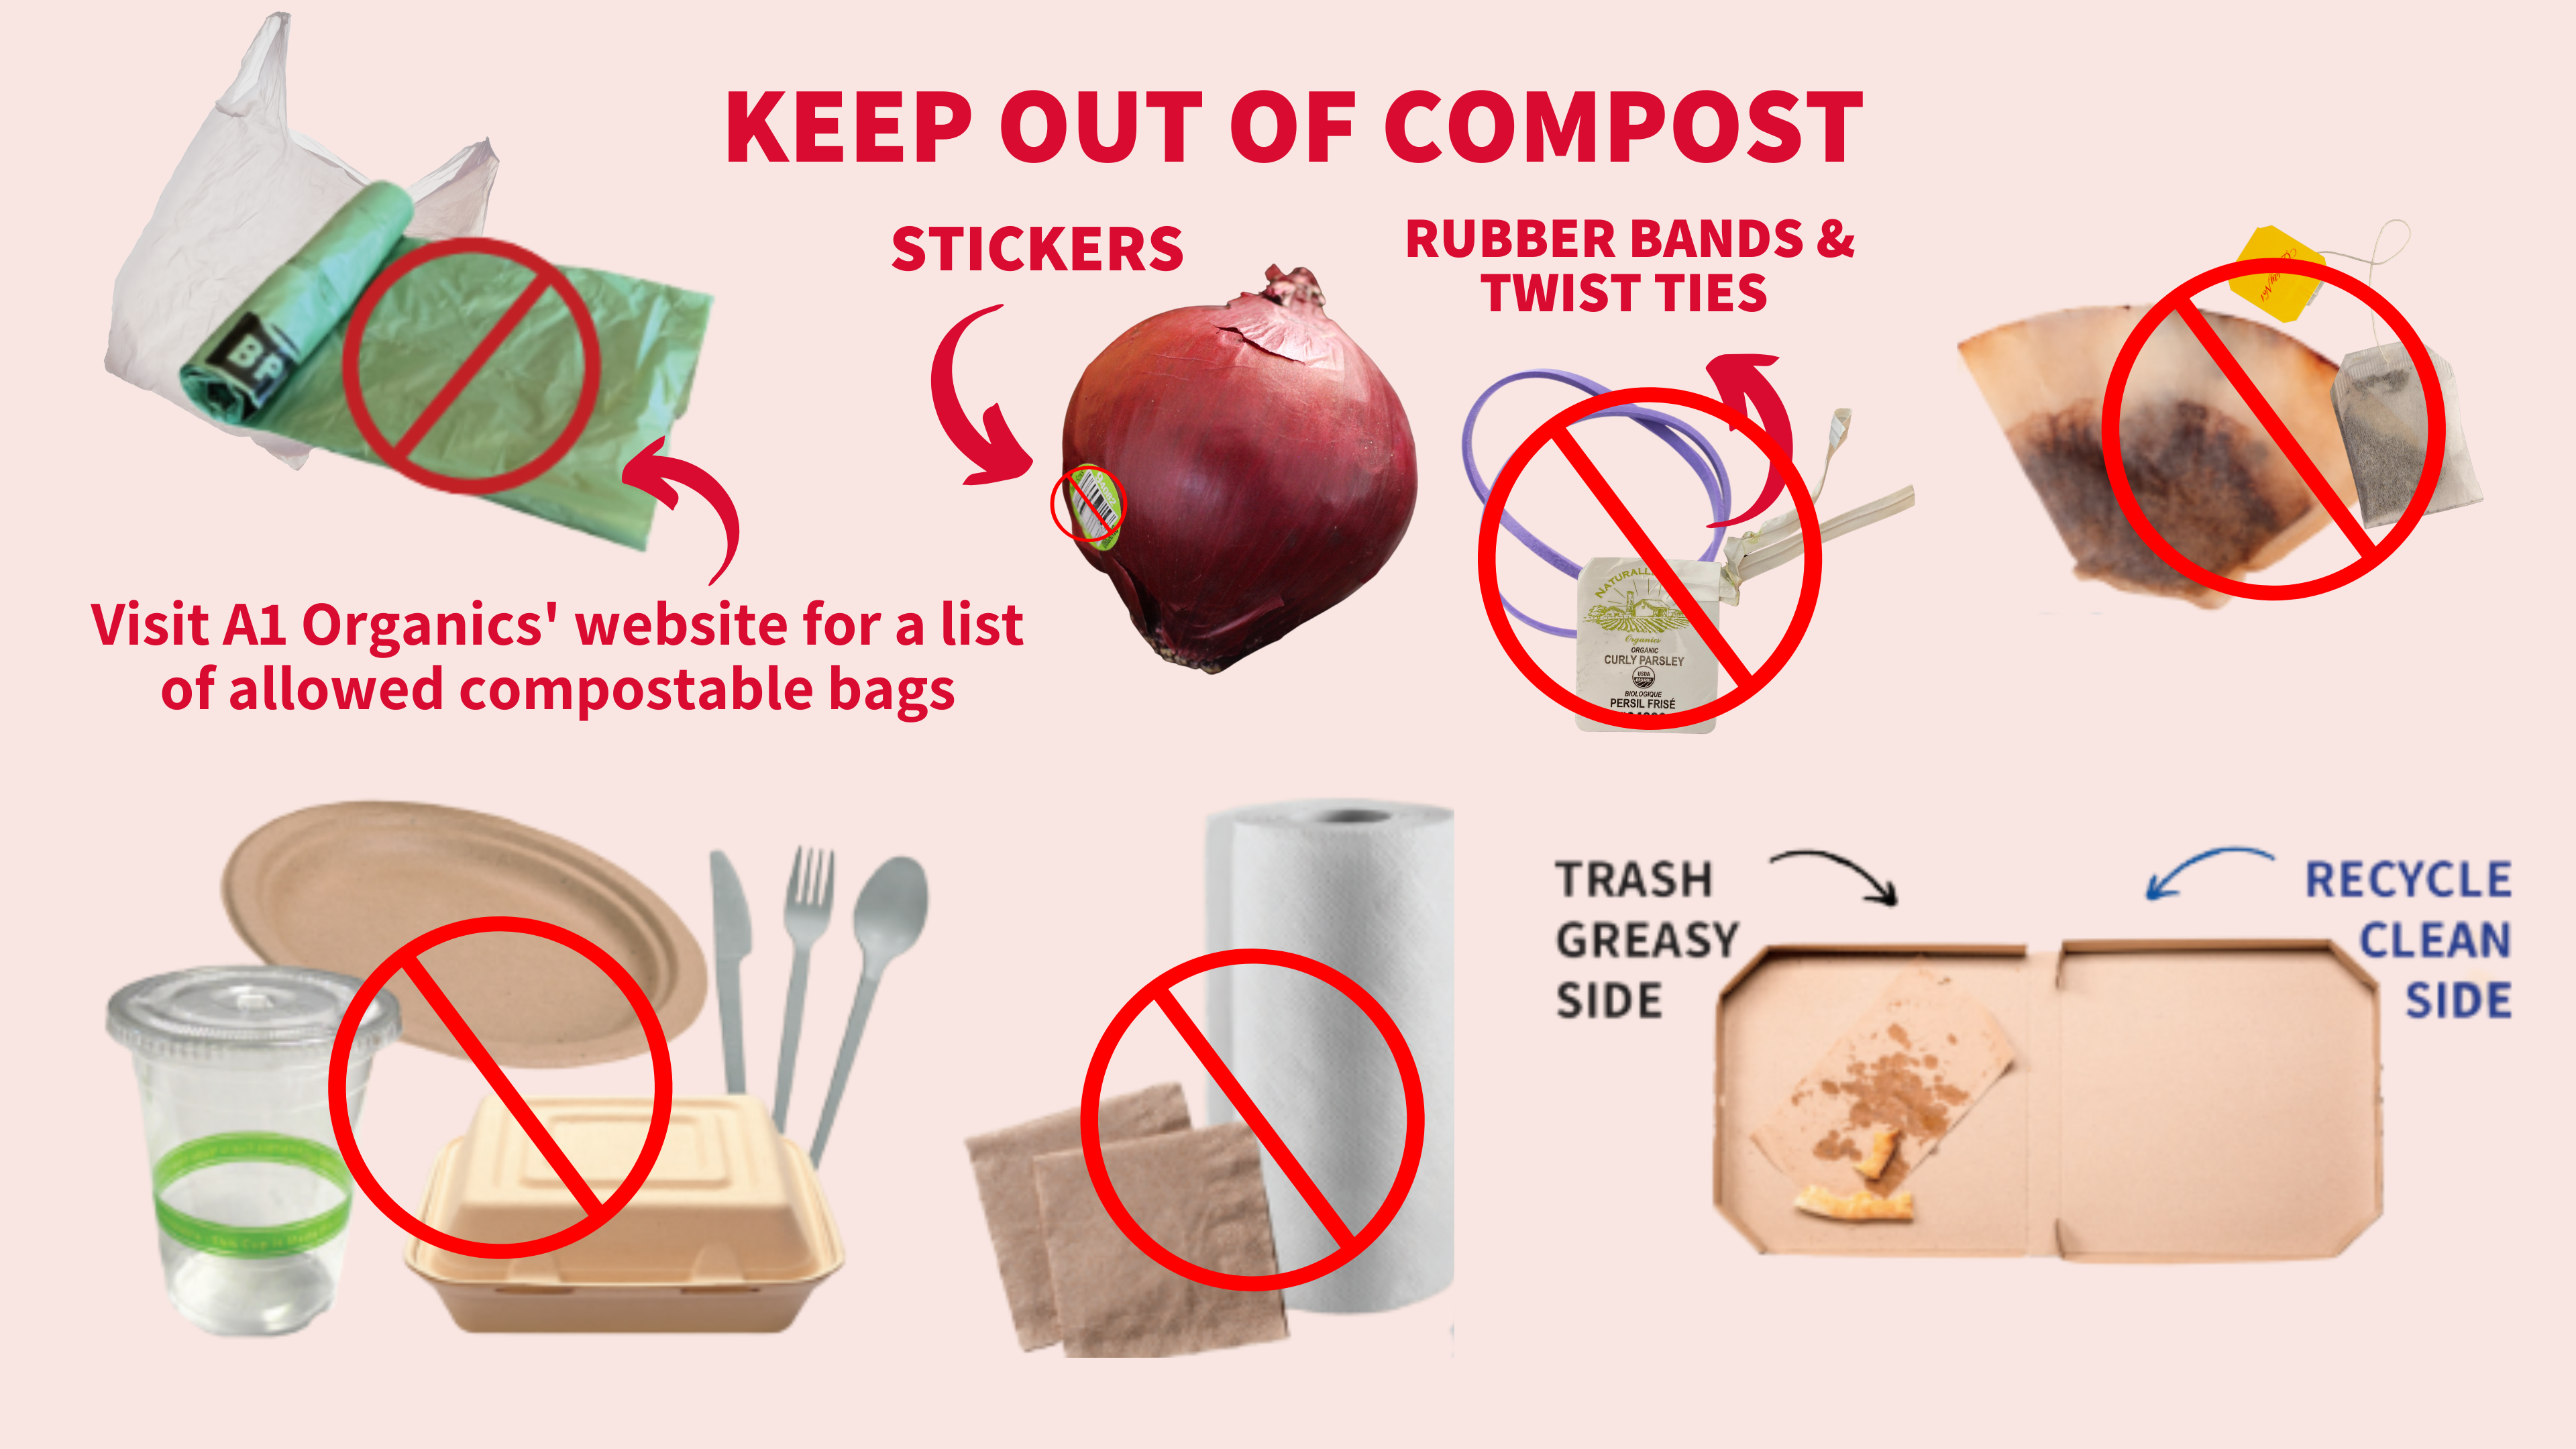 Apprenez à faire votre sac en papier pour votre bac de compost